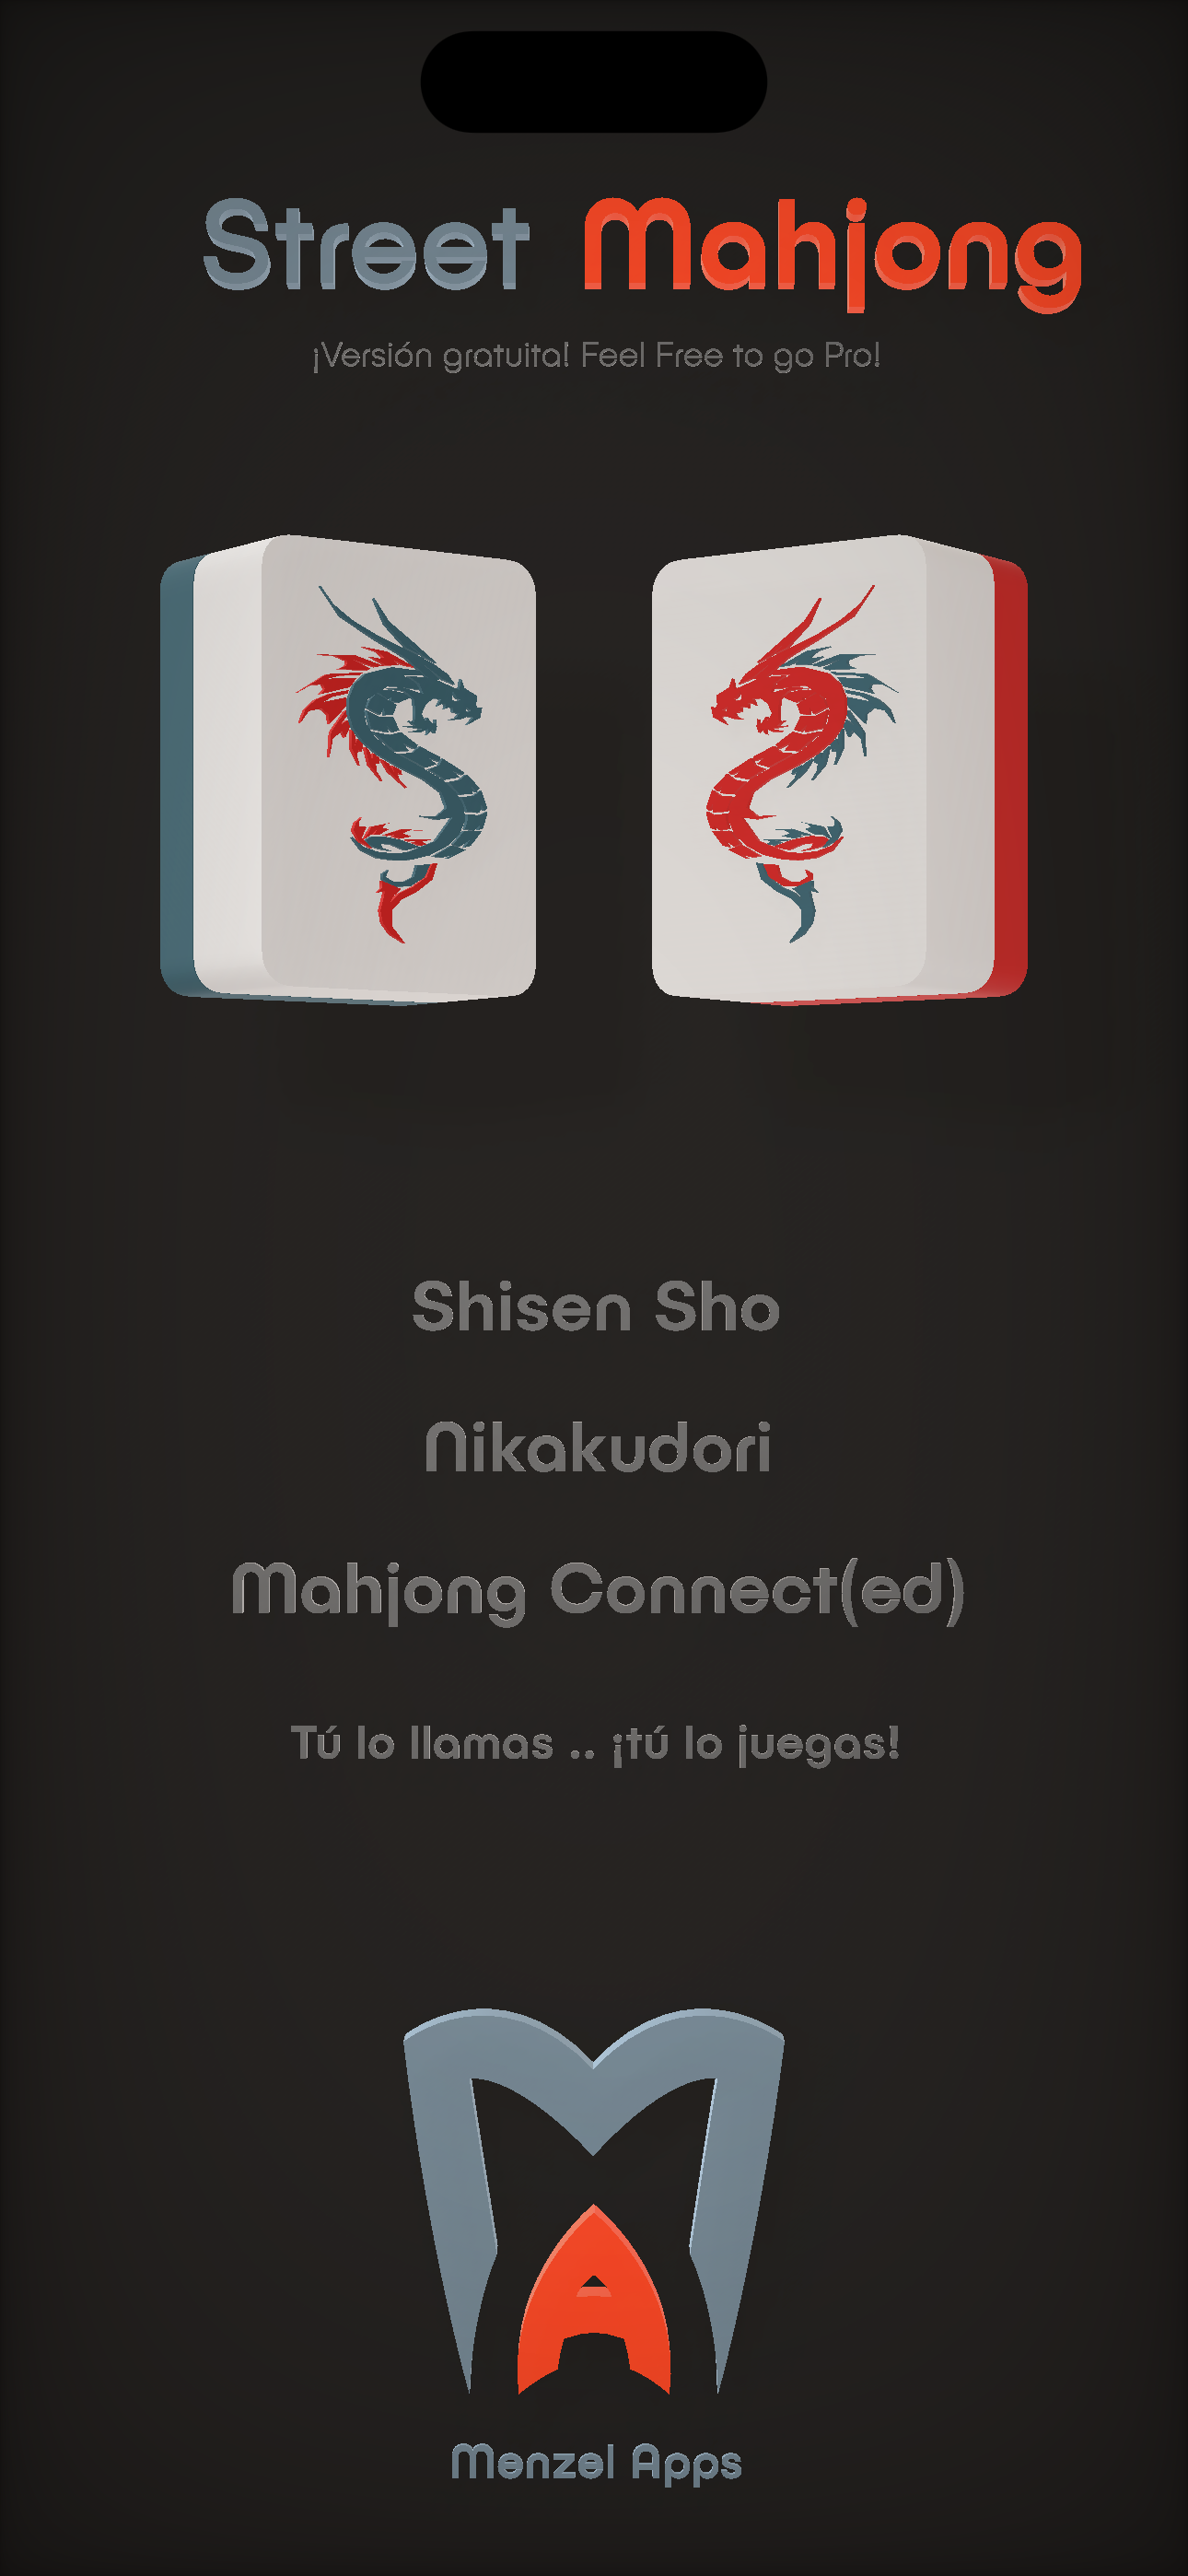 Street Mahjong - Shisen Sho - Nikakudori - Mahjong Connect - Mahjong Connected